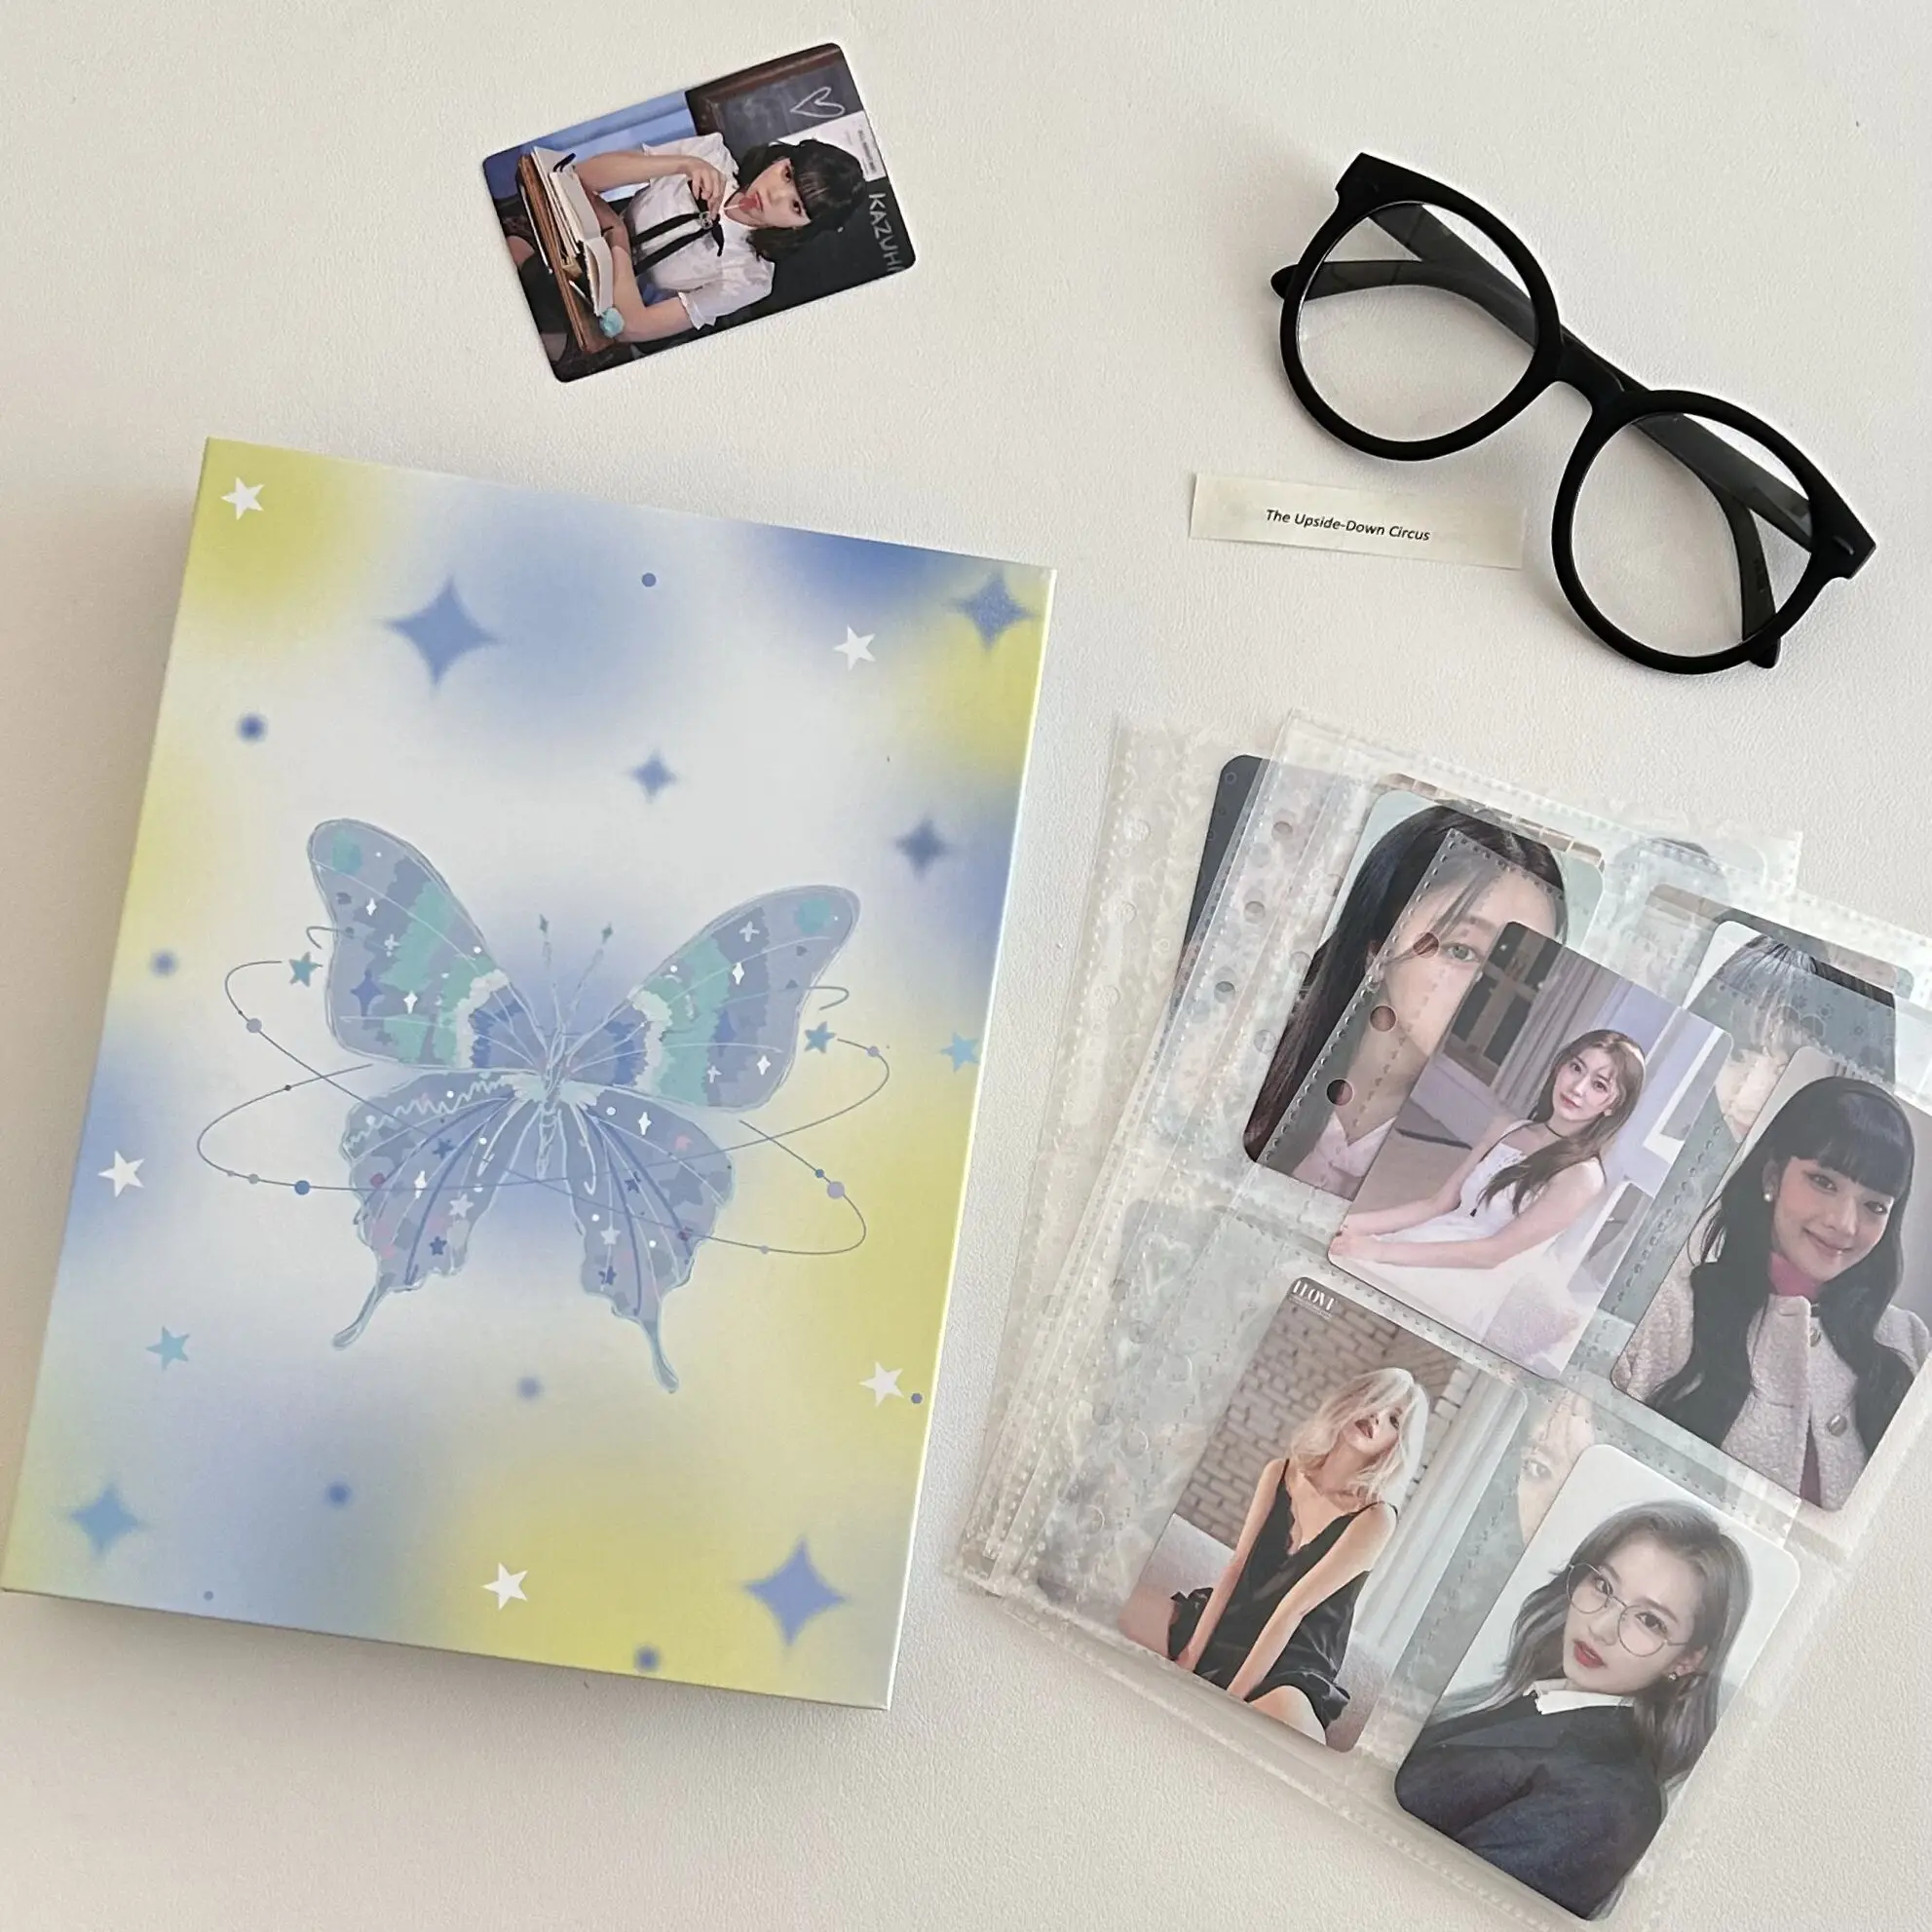 Оригинальный дизайн MINKYS Kawaii Butterfly Папка для фотокарточек формата A5 Kpop, коллекционная книга, держатель для фотокарточек Idol, альбом для фотокарточек, канцелярские принадлежности